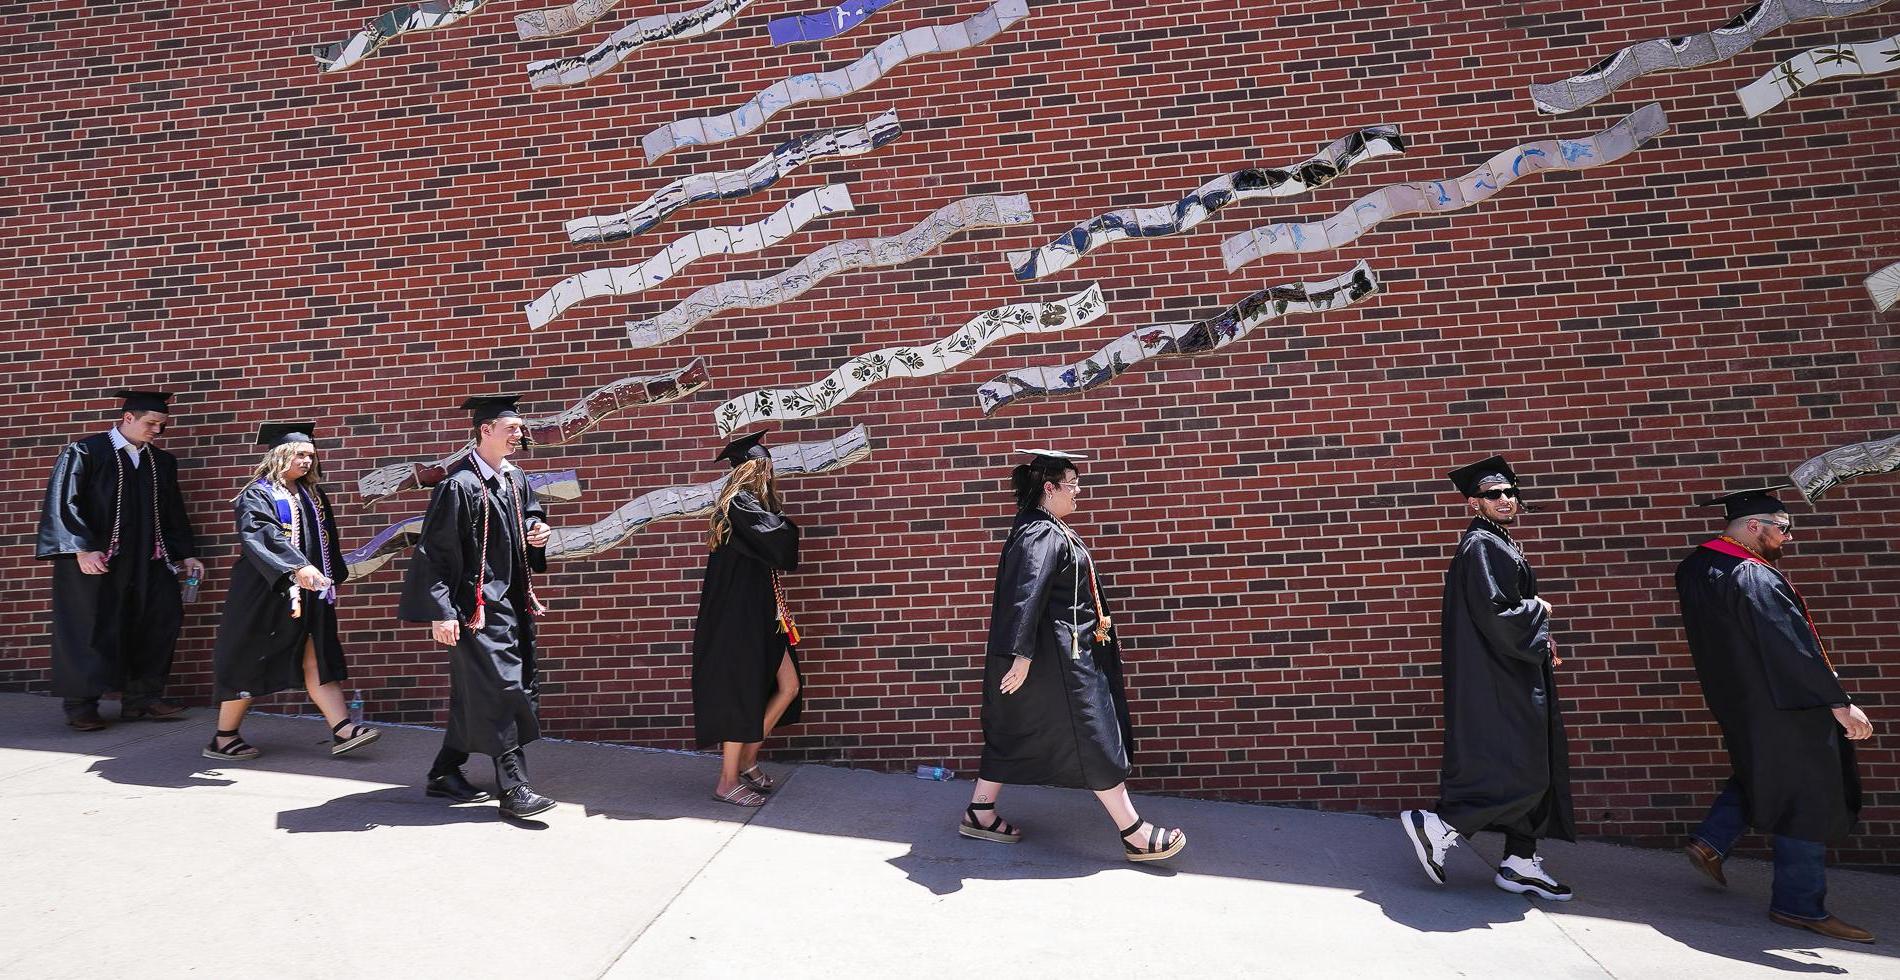 七名戴着黑色帽子、身穿黑色长袍的学生走下斜坡，前方是一面砖墙，墙上是一幅由波浪瓷砖制成的壁画.